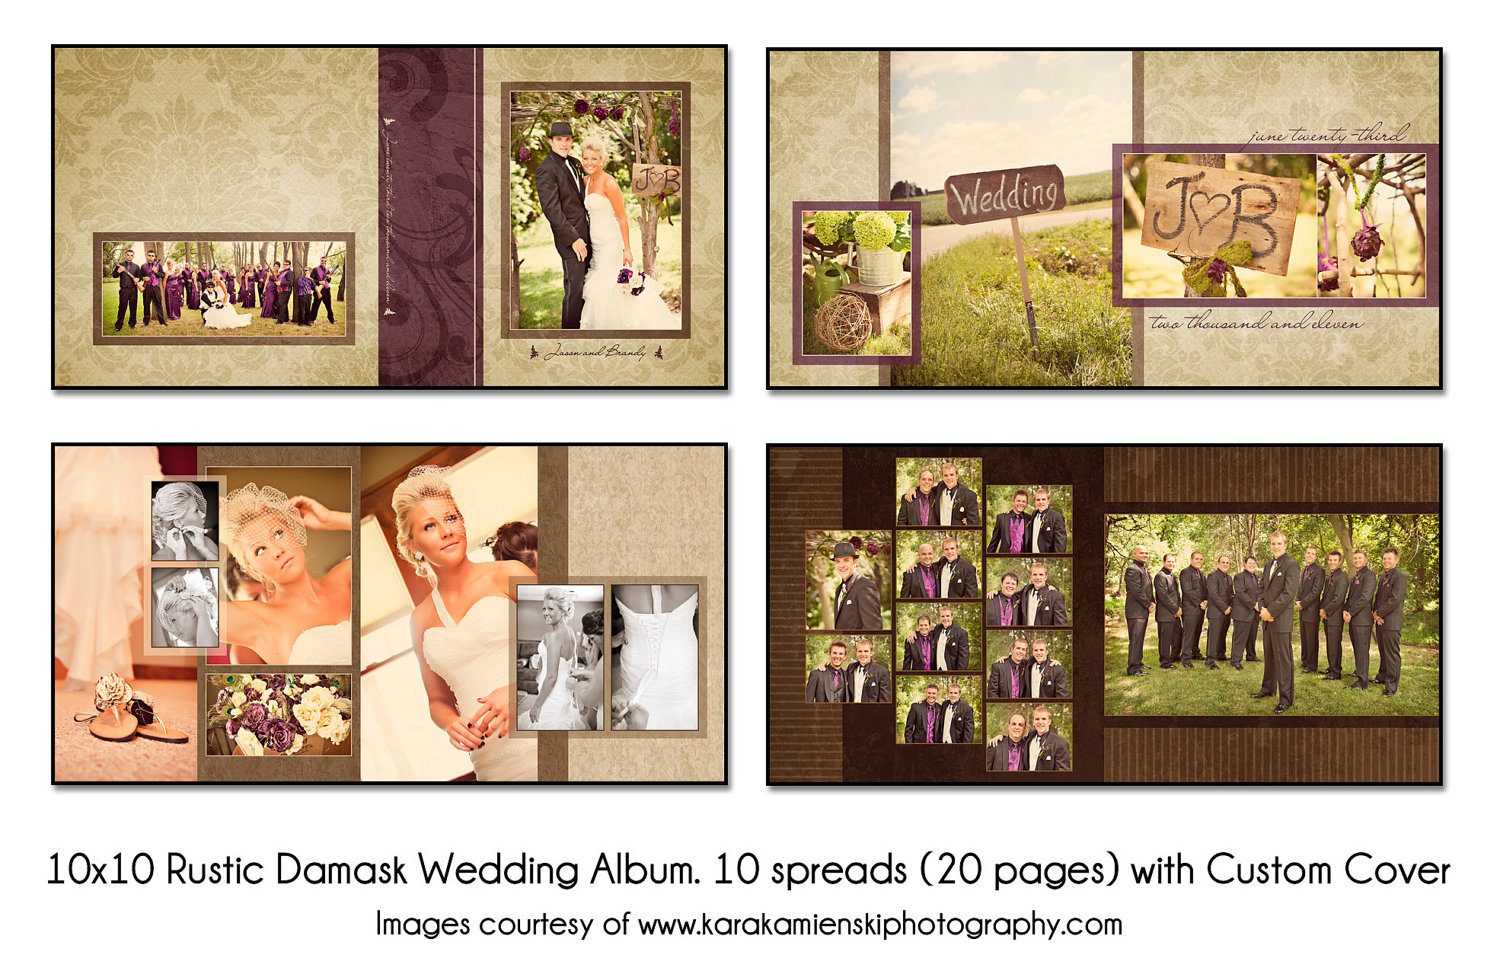 Wedding Album Design Templates